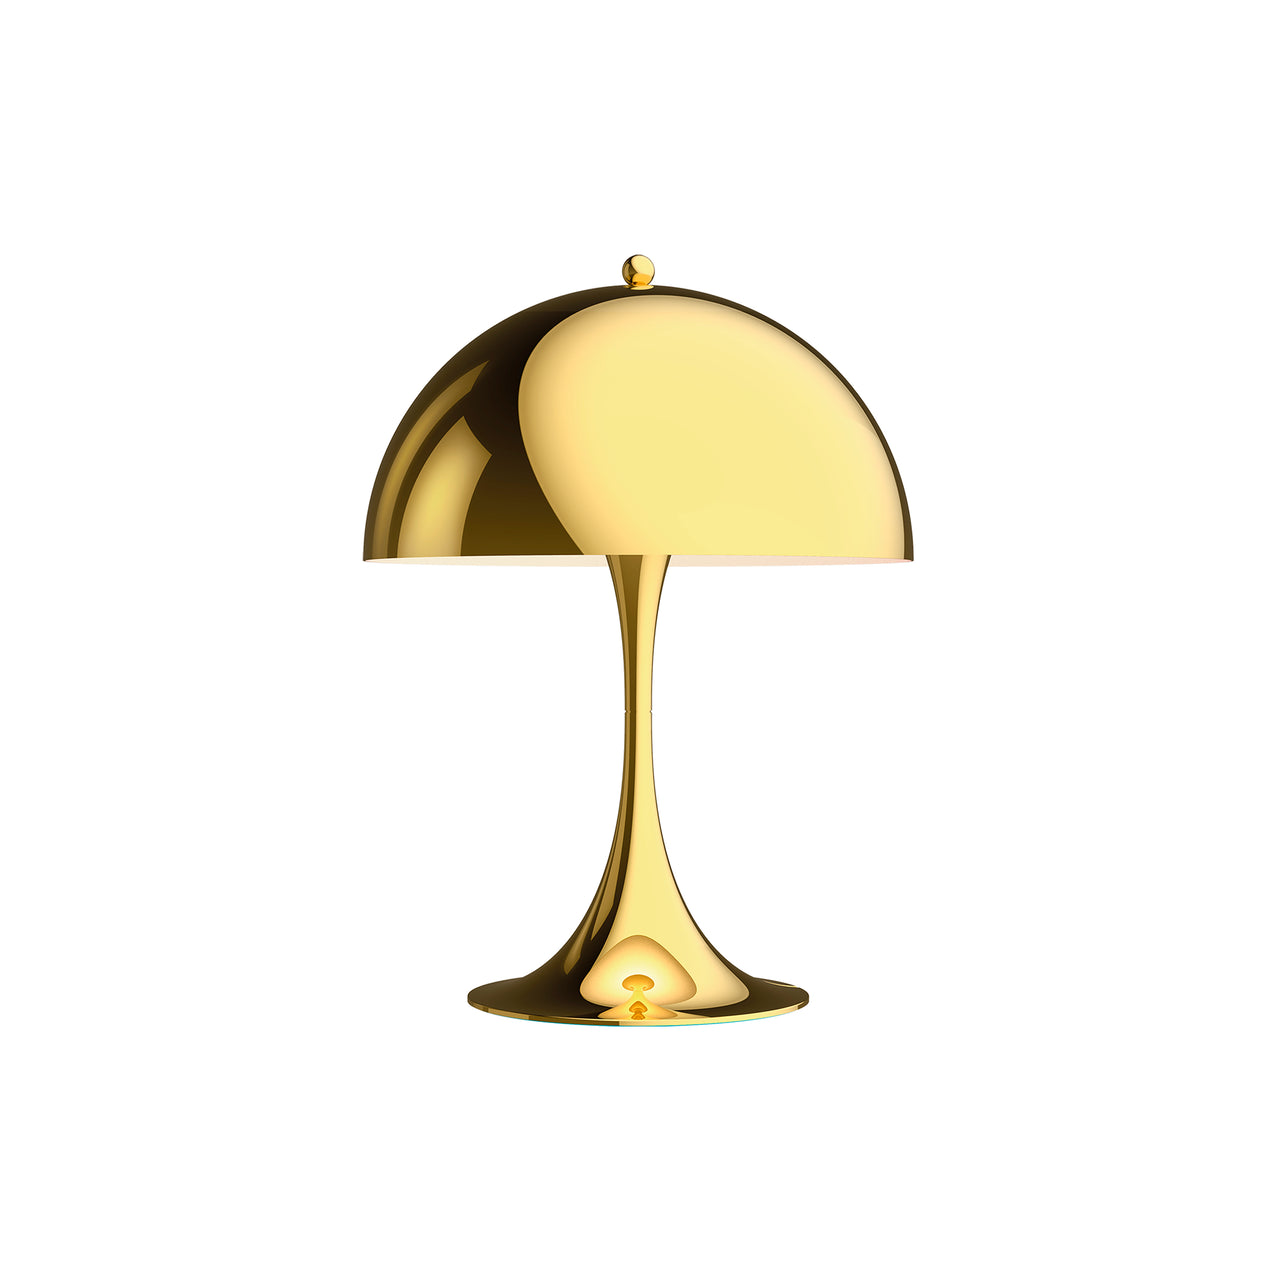 Panthella 250 Table Lamp: Metallised Brass